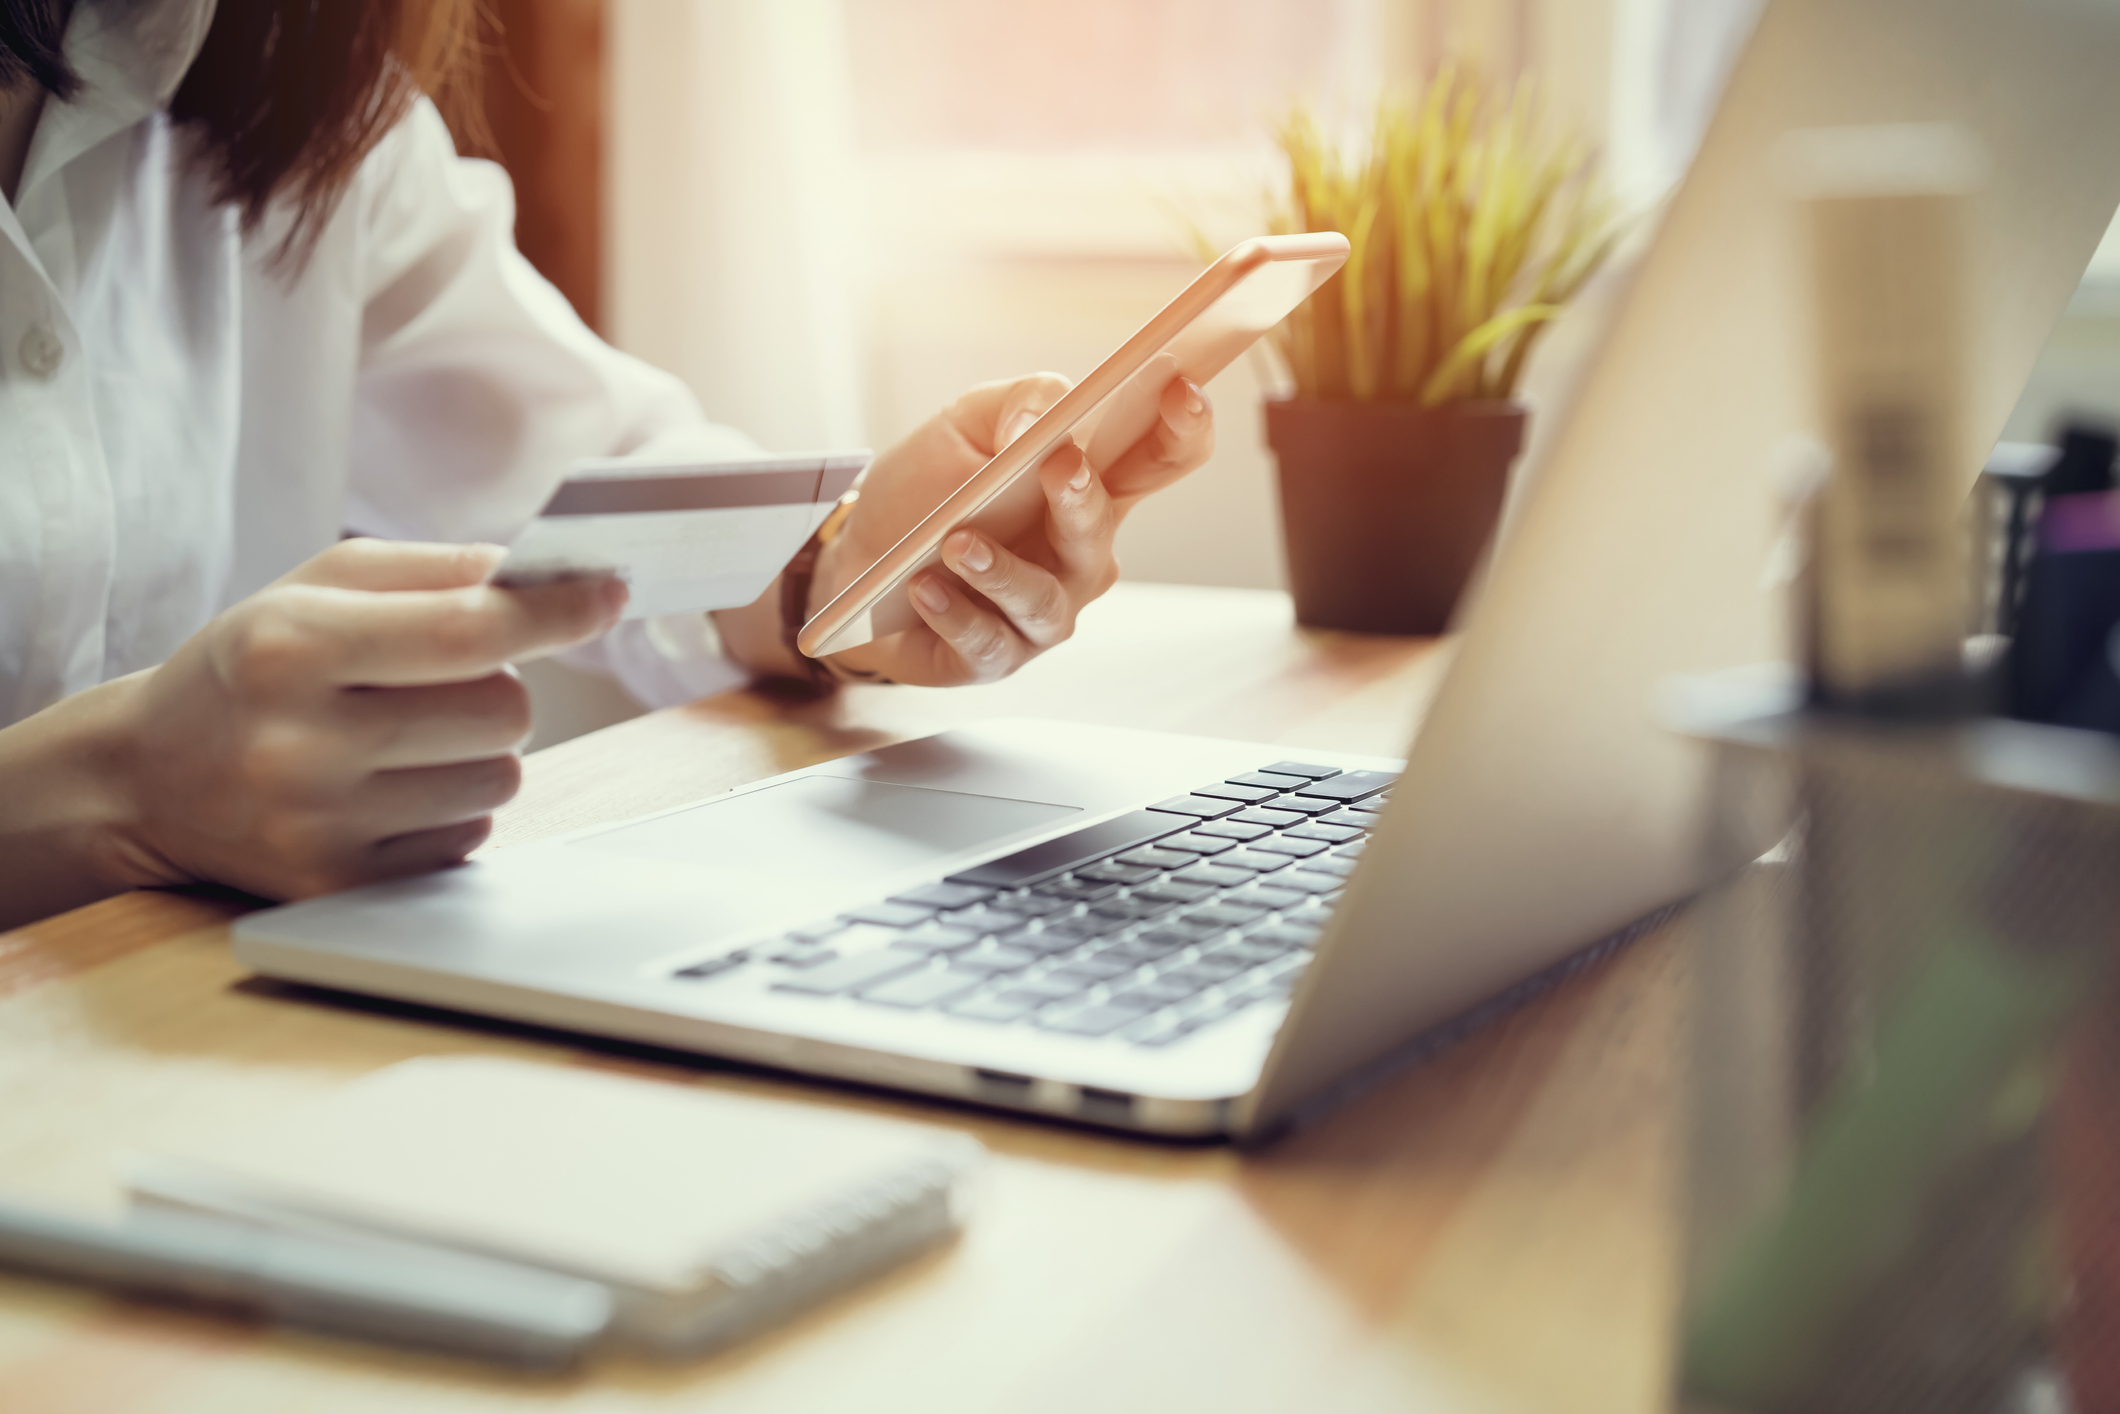 Ηλεκτρονικά καταστήματα: Οι ψηφιακοί καταναλωτές μειώνουν δαπάνες κι αναζητούν ποιότητα υπηρεσιών